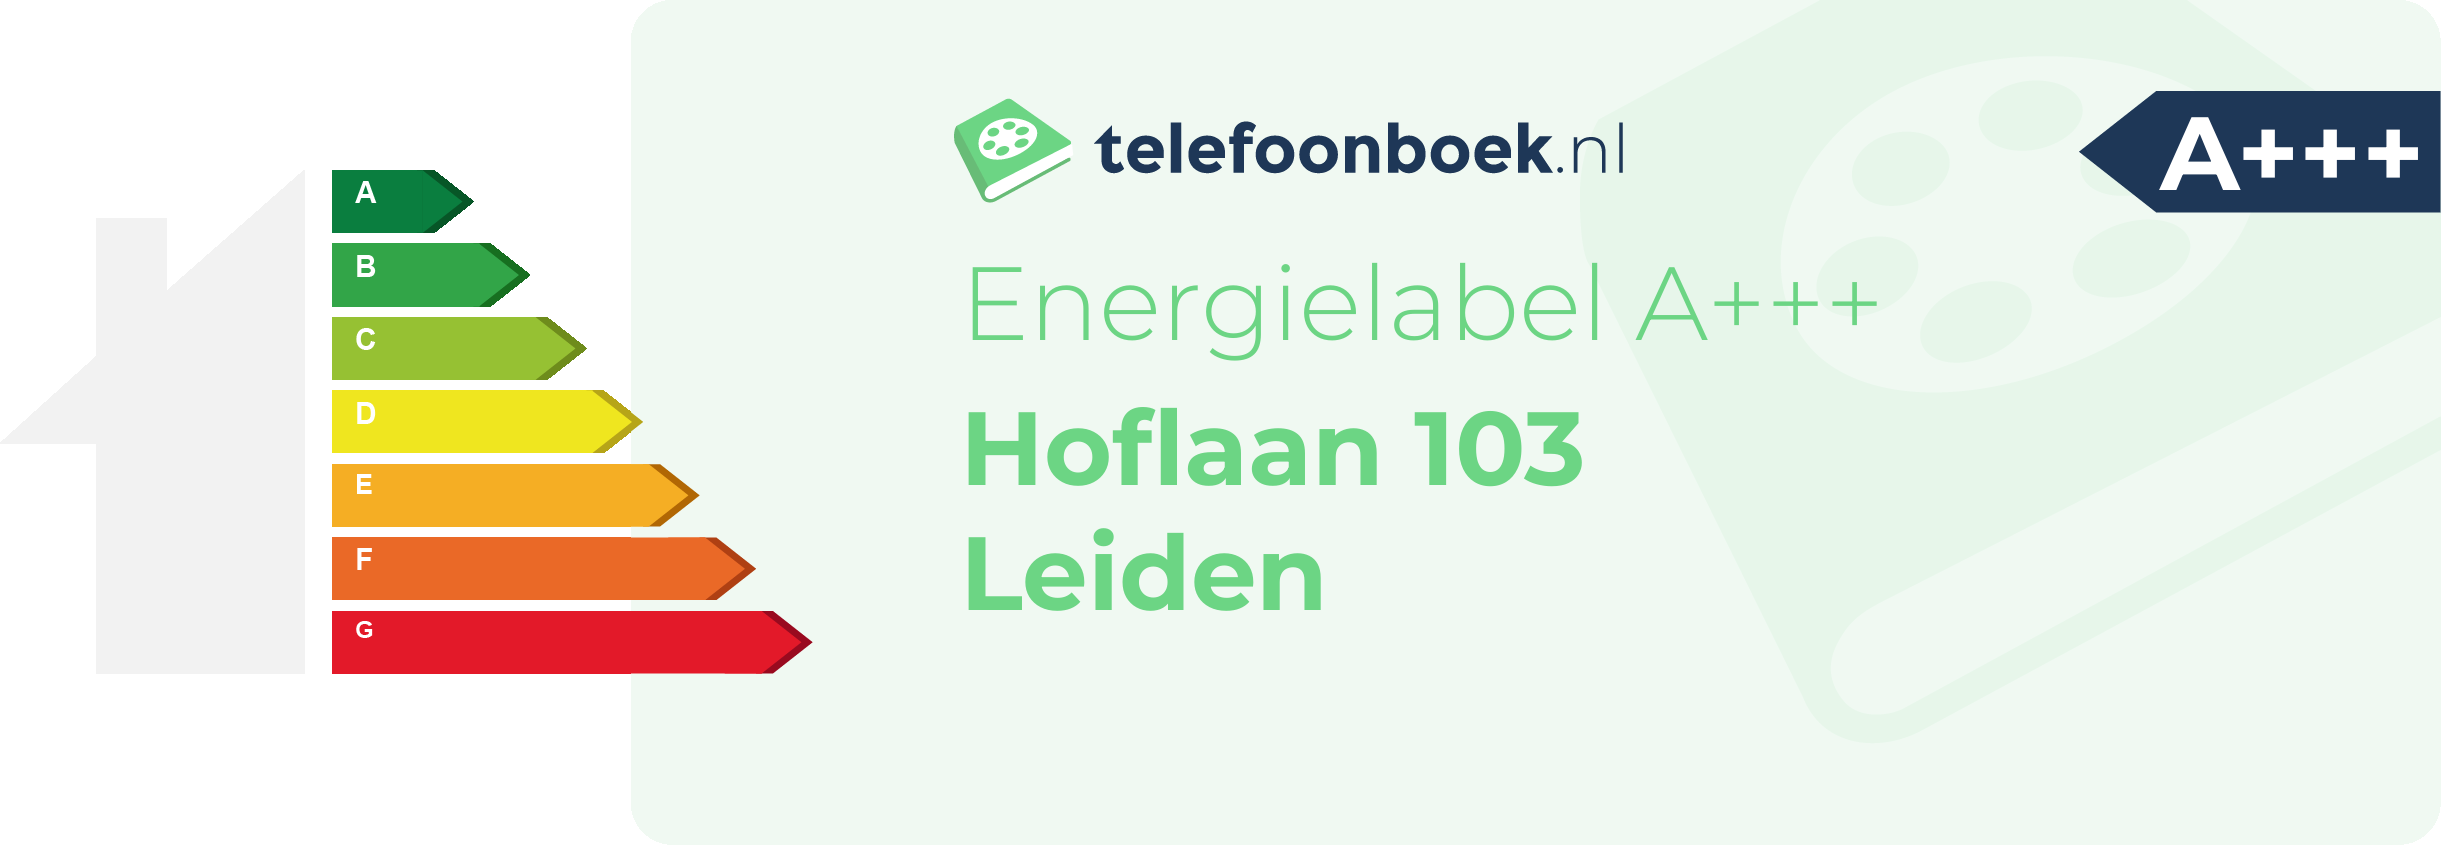 Energielabel Hoflaan 103 Leiden